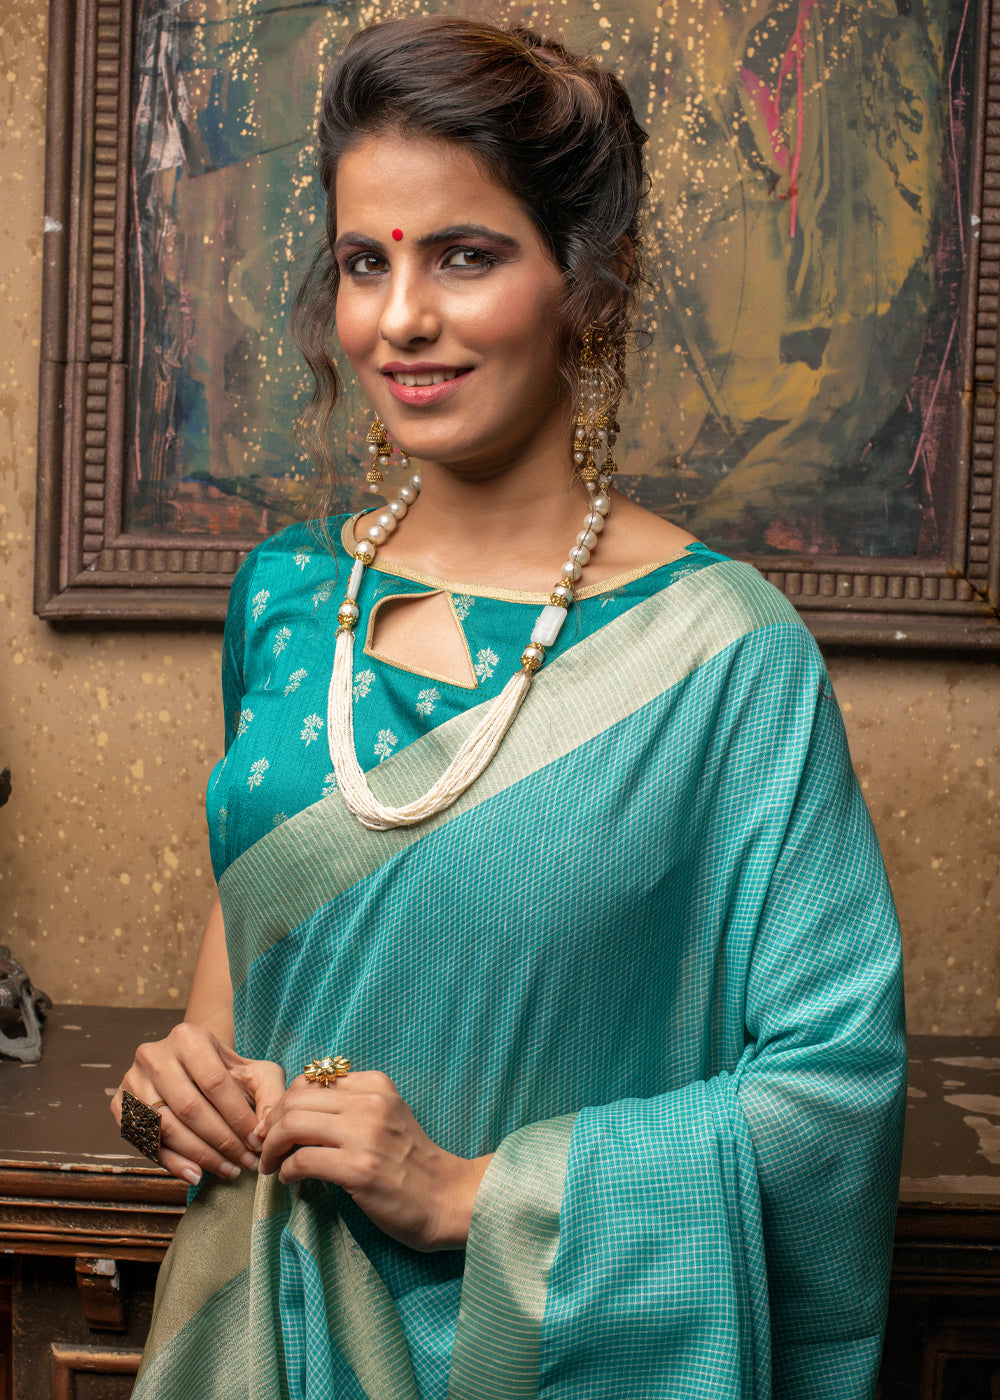 Blue silk saree | Blue silk saree, Saree, Exclusive saree blouse designs